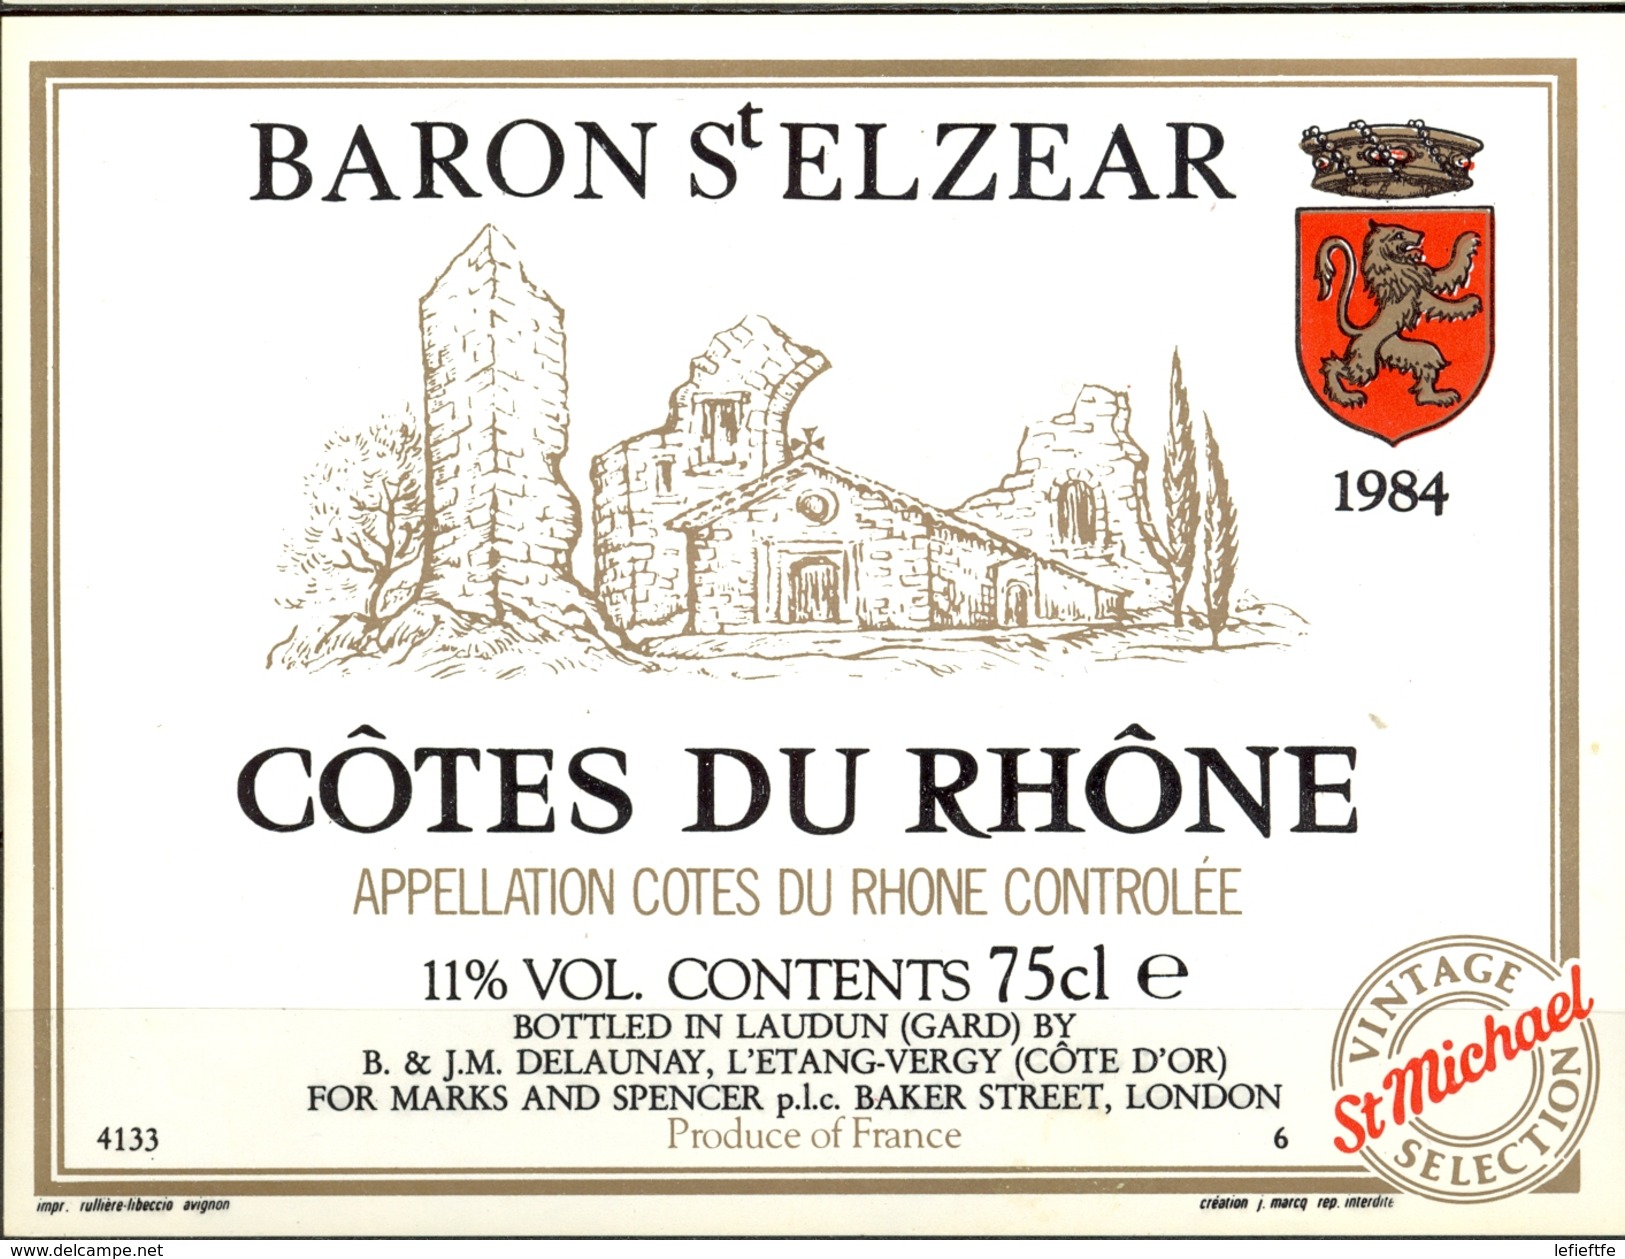 581 - France - 1984 - Côtes Du Rhône - Baron St Elzear - Mis En Bouteilles A Laudun 30  Pour Marks And Spencer - Côtes Du Rhône